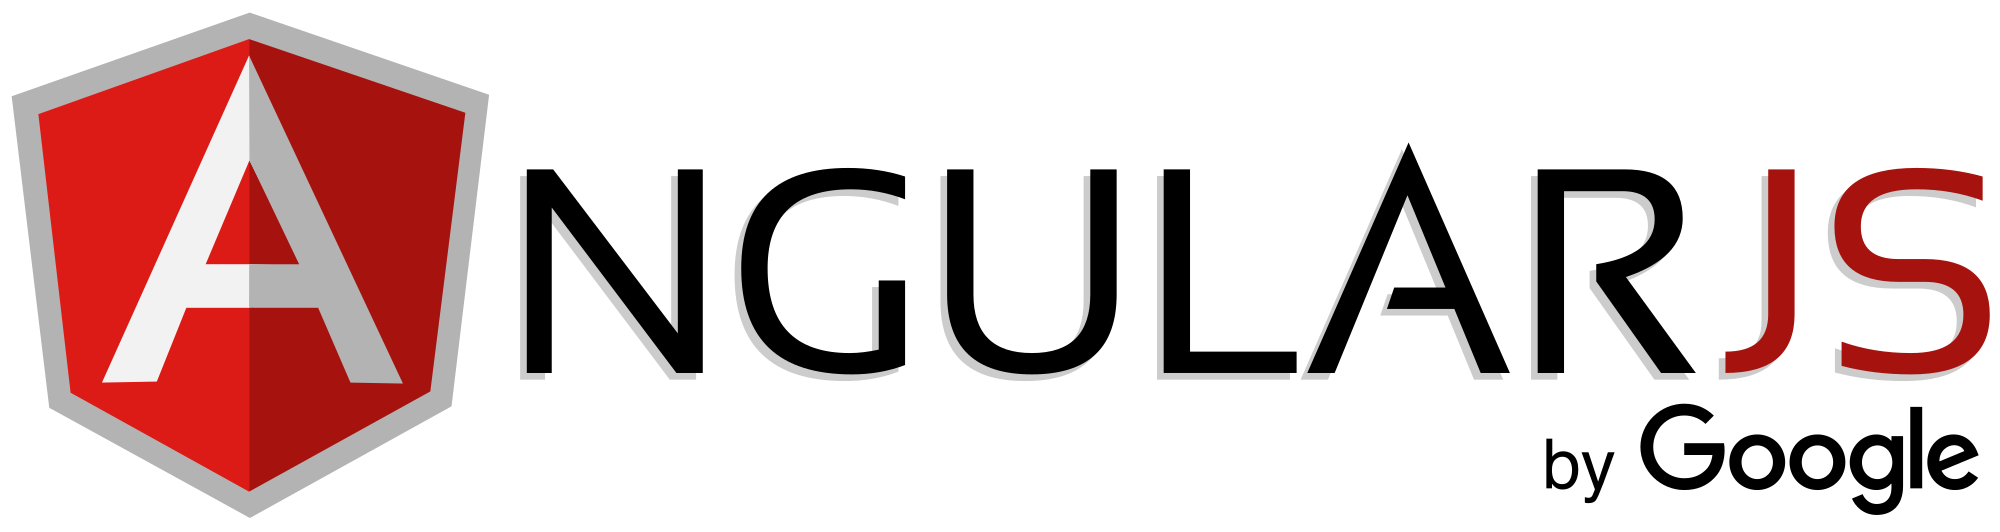 AngularJS_logo javascript framework